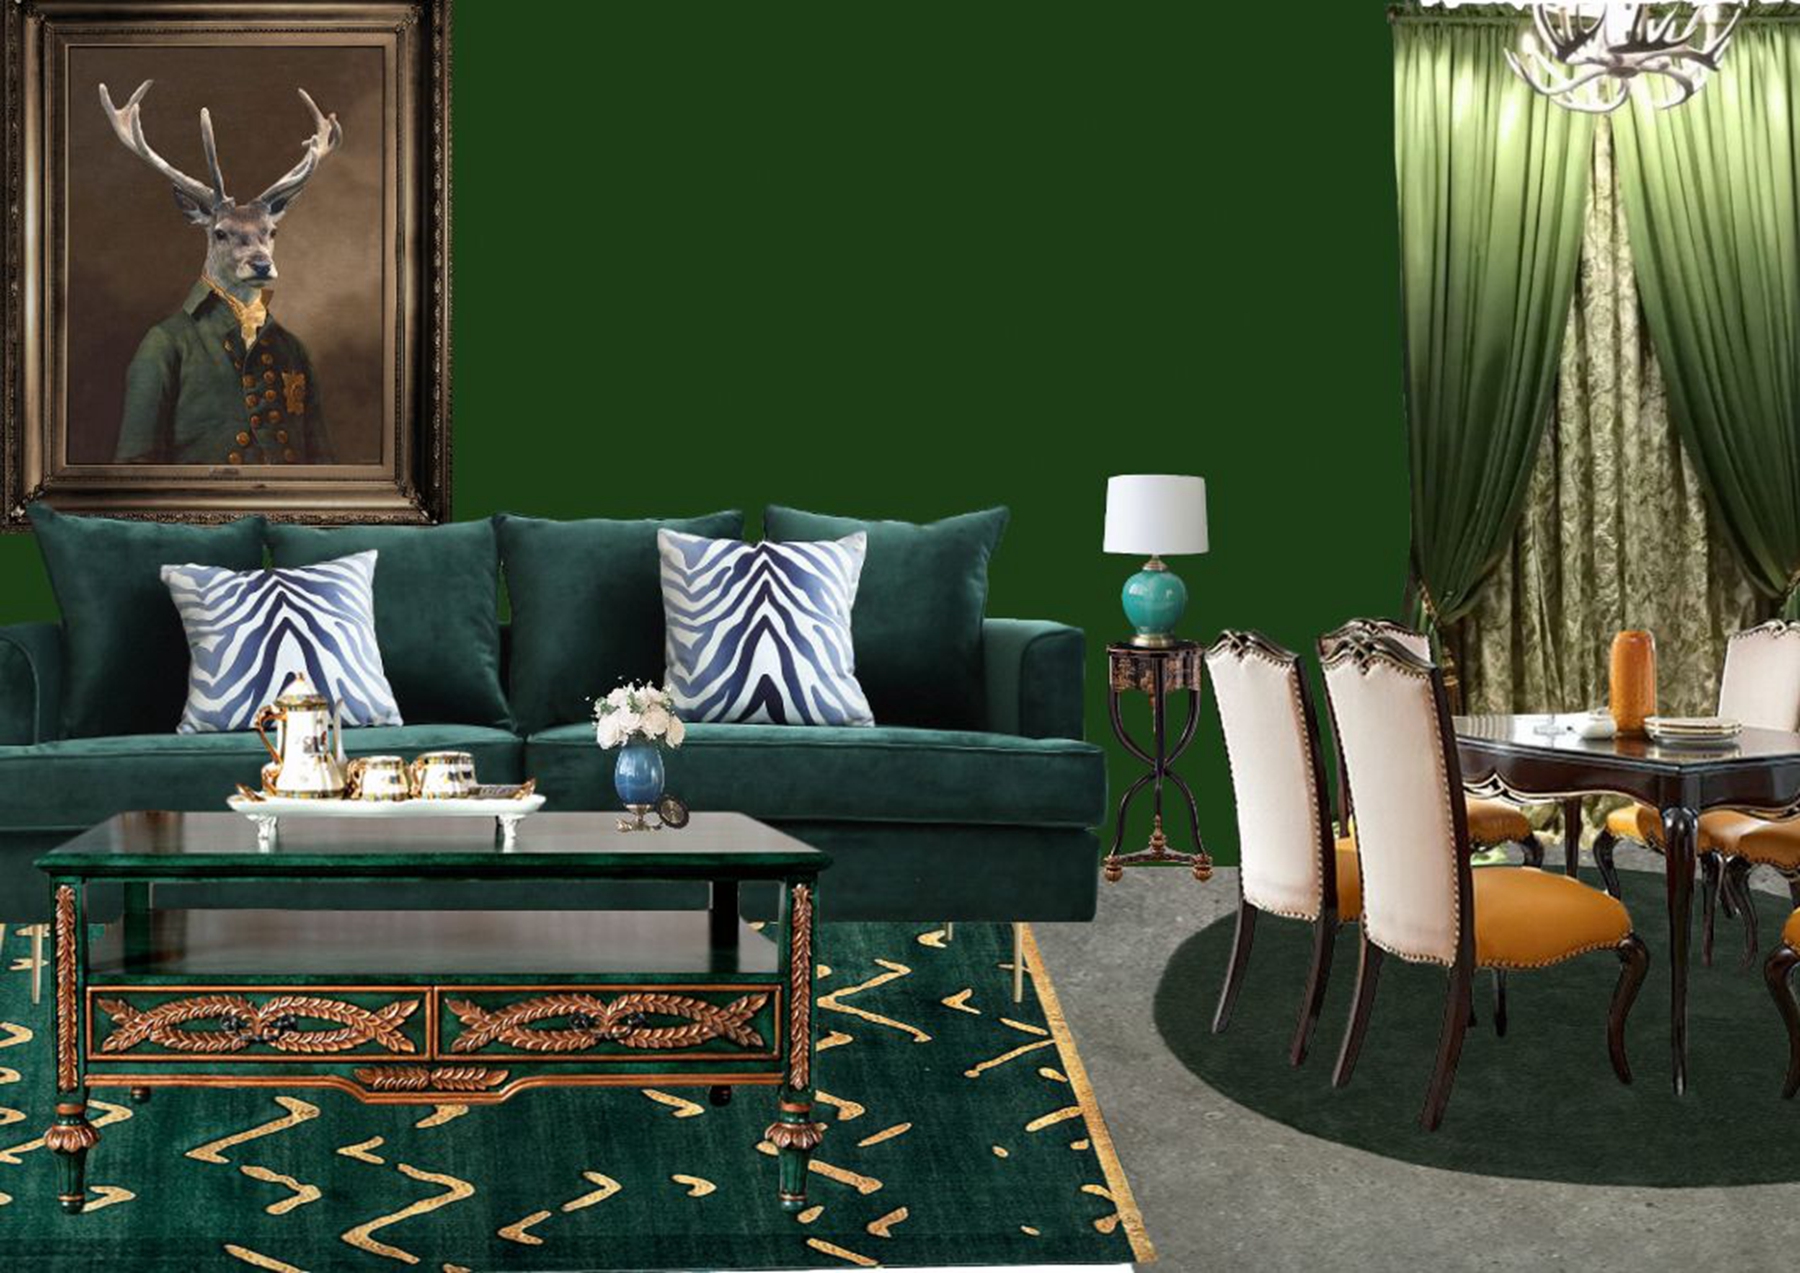 浅绿色壁纸配沙发图图片